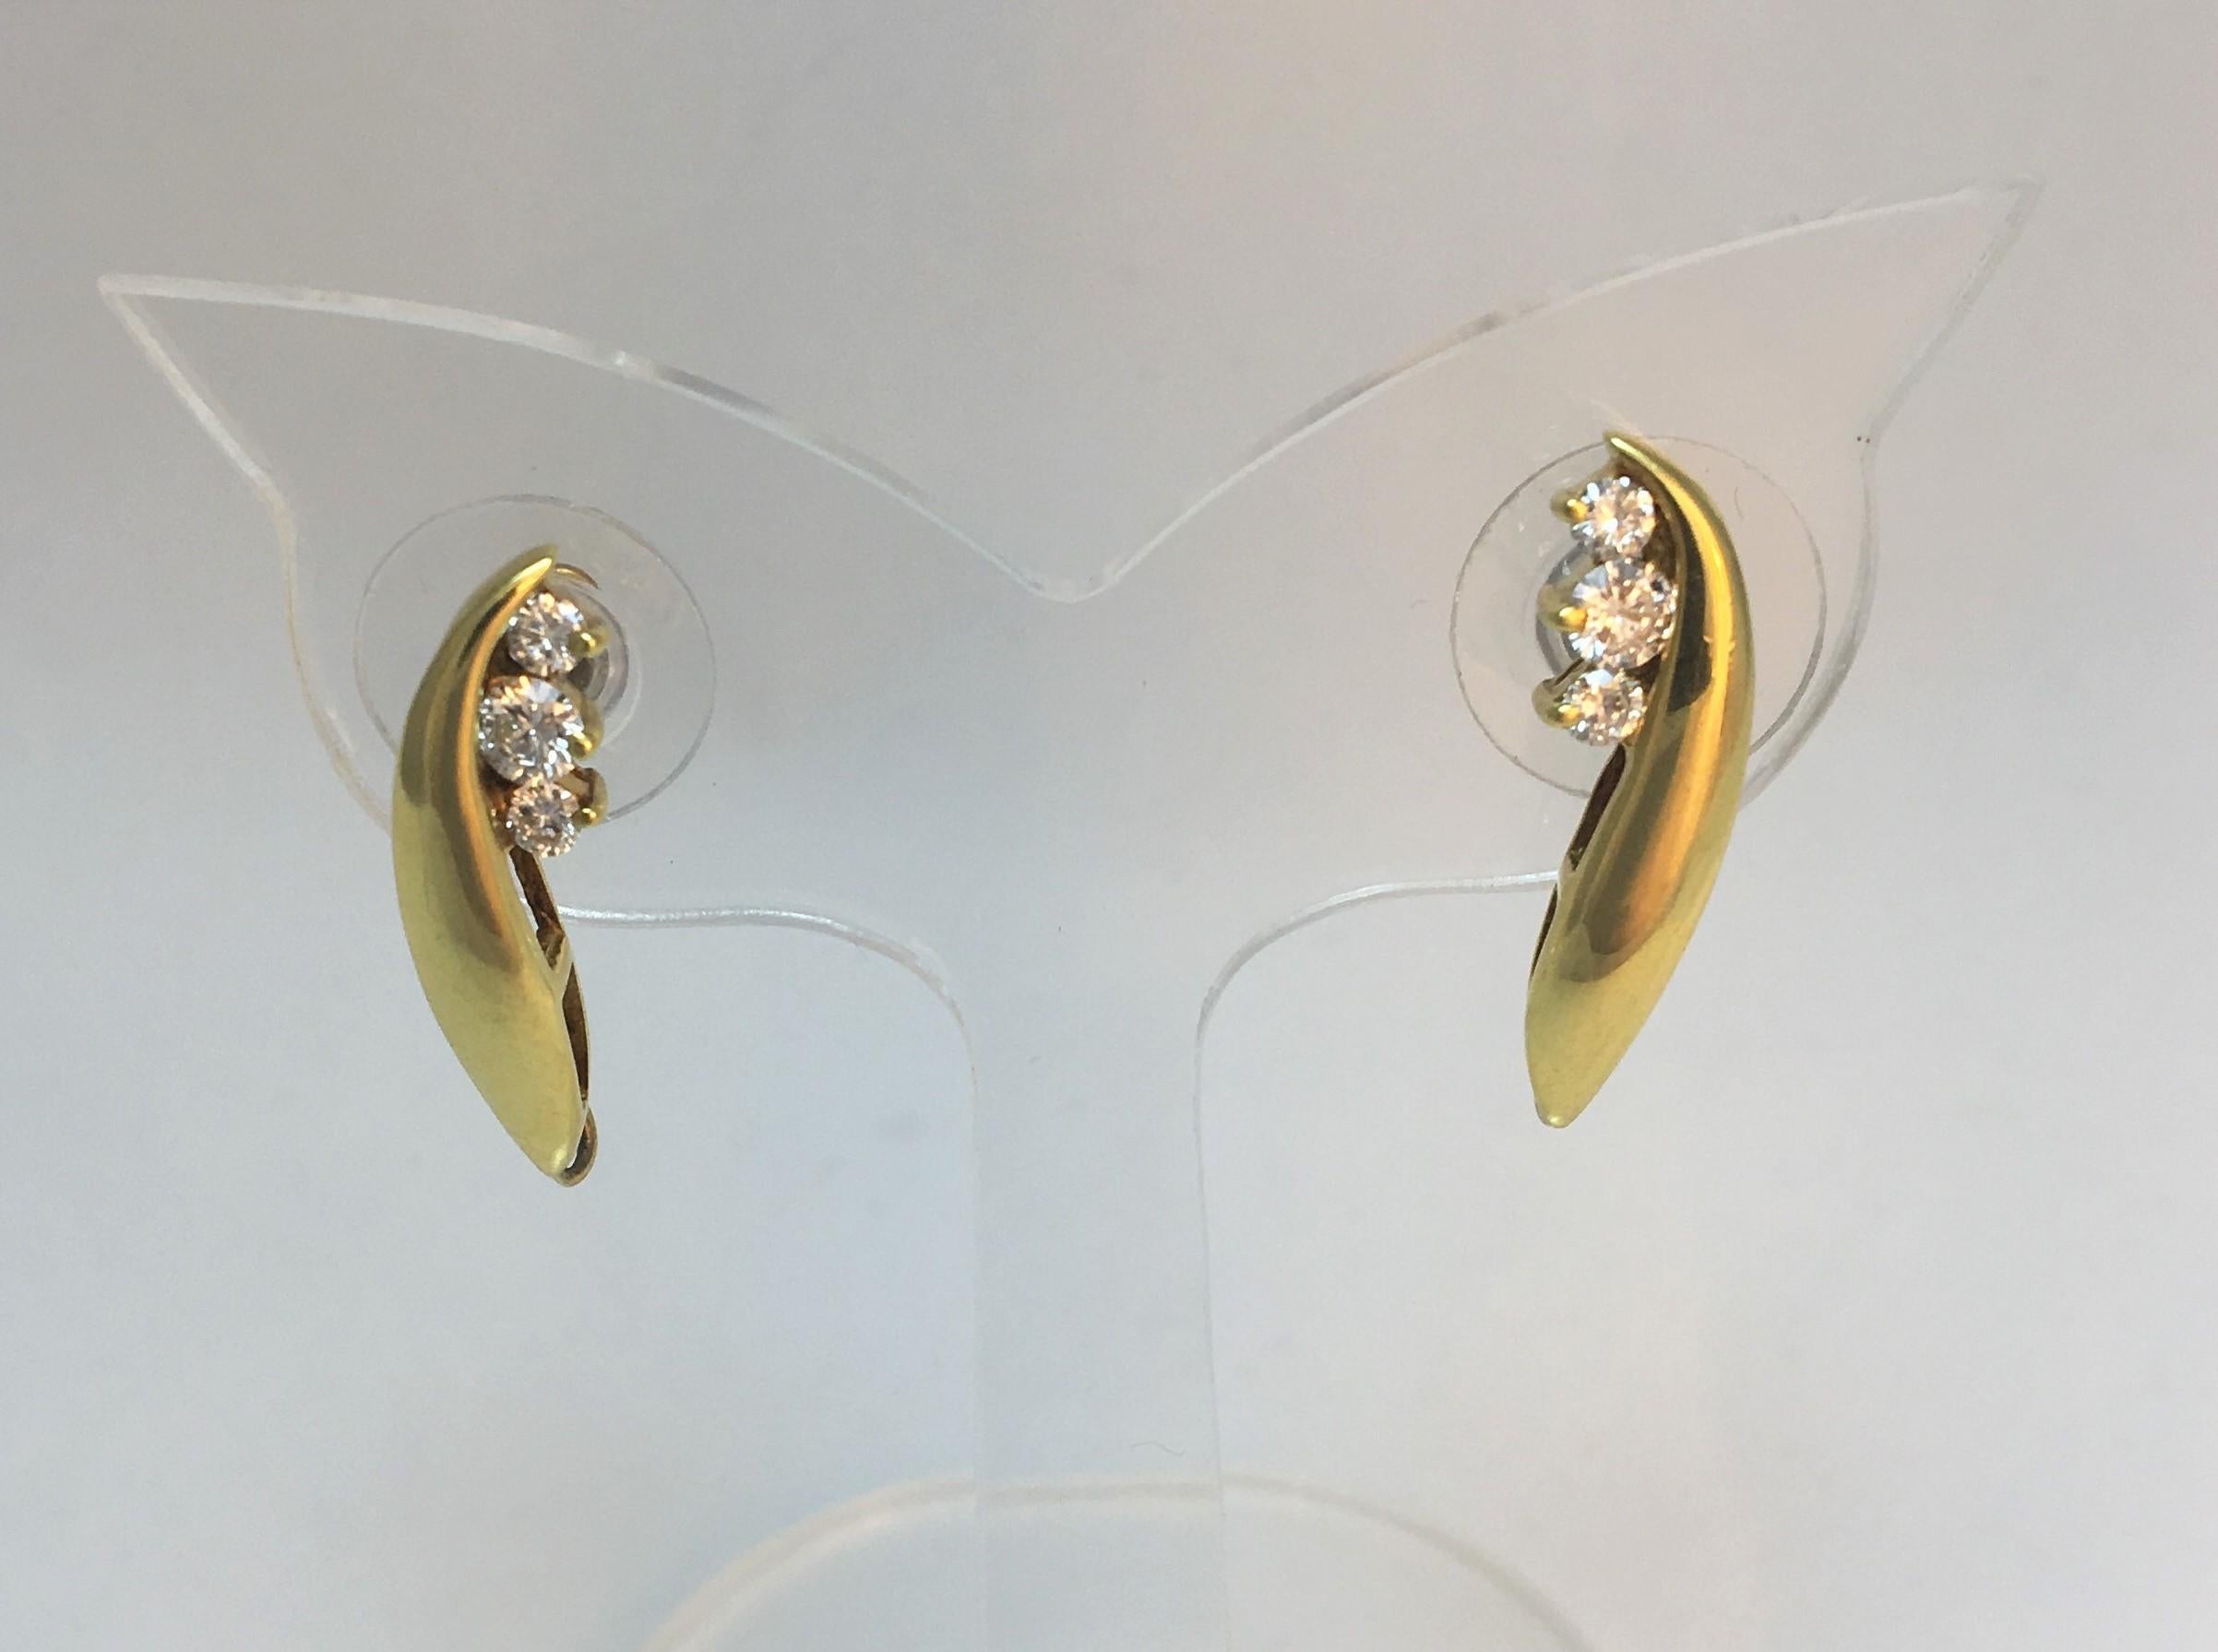 Honora Jewelry Co. Inc.  Designer
um die 1990er Jahre
Diamant- und Perlen-Tropfen-Ohrringe
18K Gelbgold 